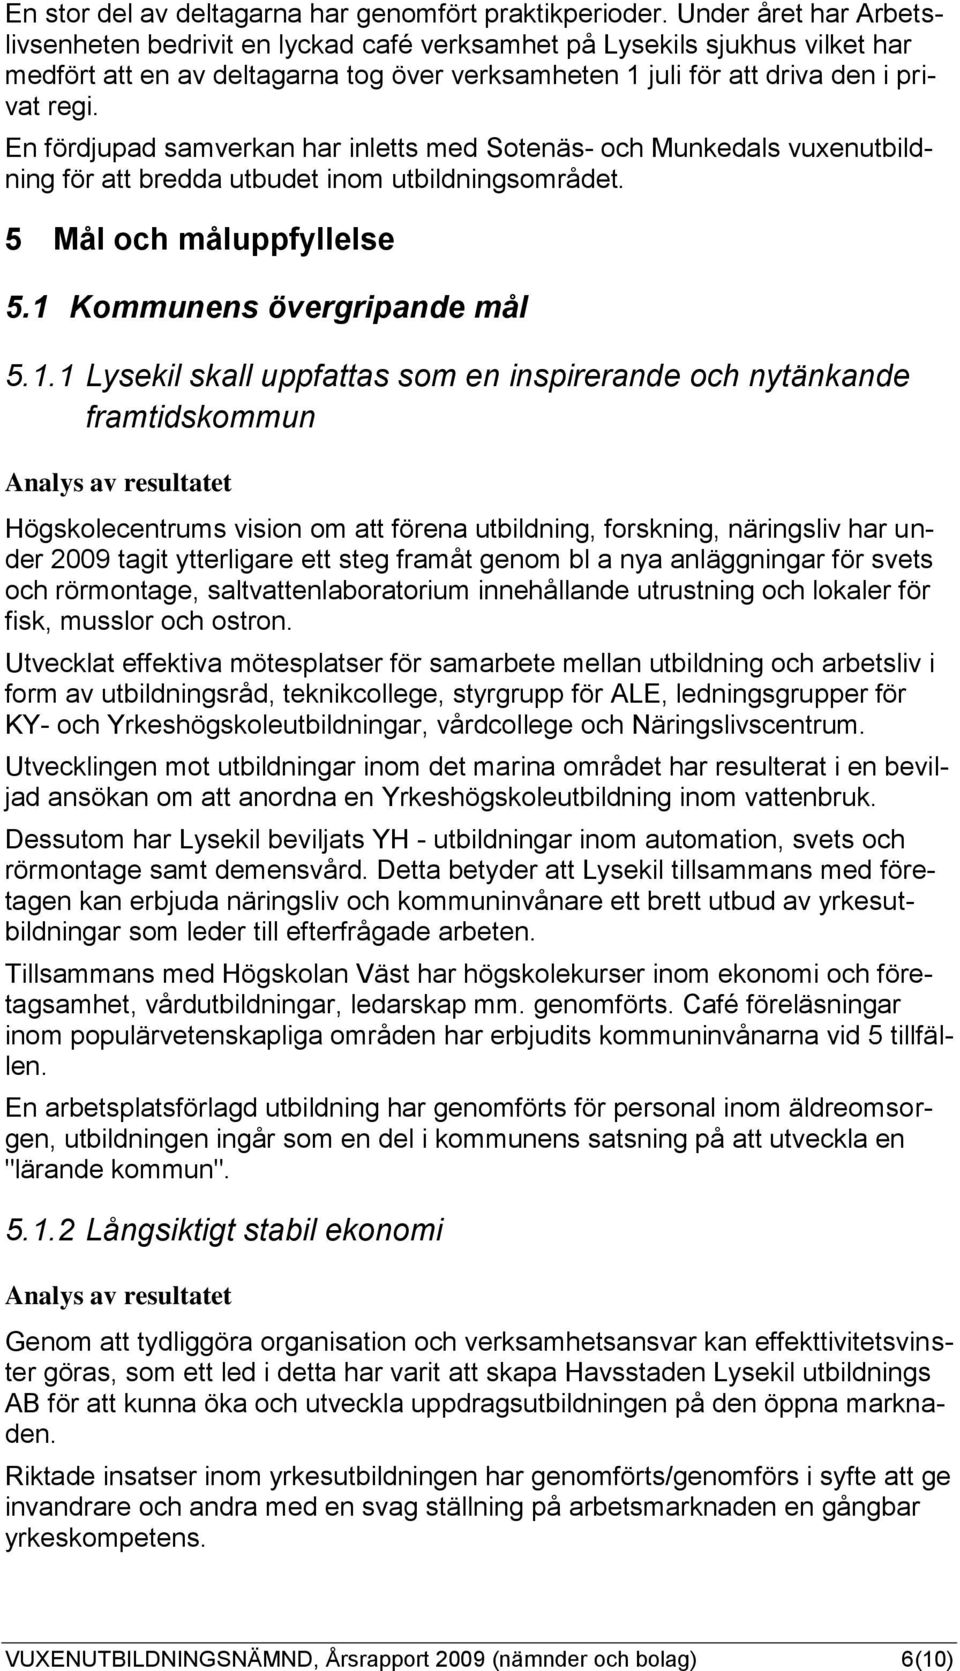 En fördjupad samverkan har inletts med Sotenäs- och Munkedals vuxenutbildning för att bredda utbudet inom utbildningsområdet. 5 Mål och måluppfyllelse 5.1 